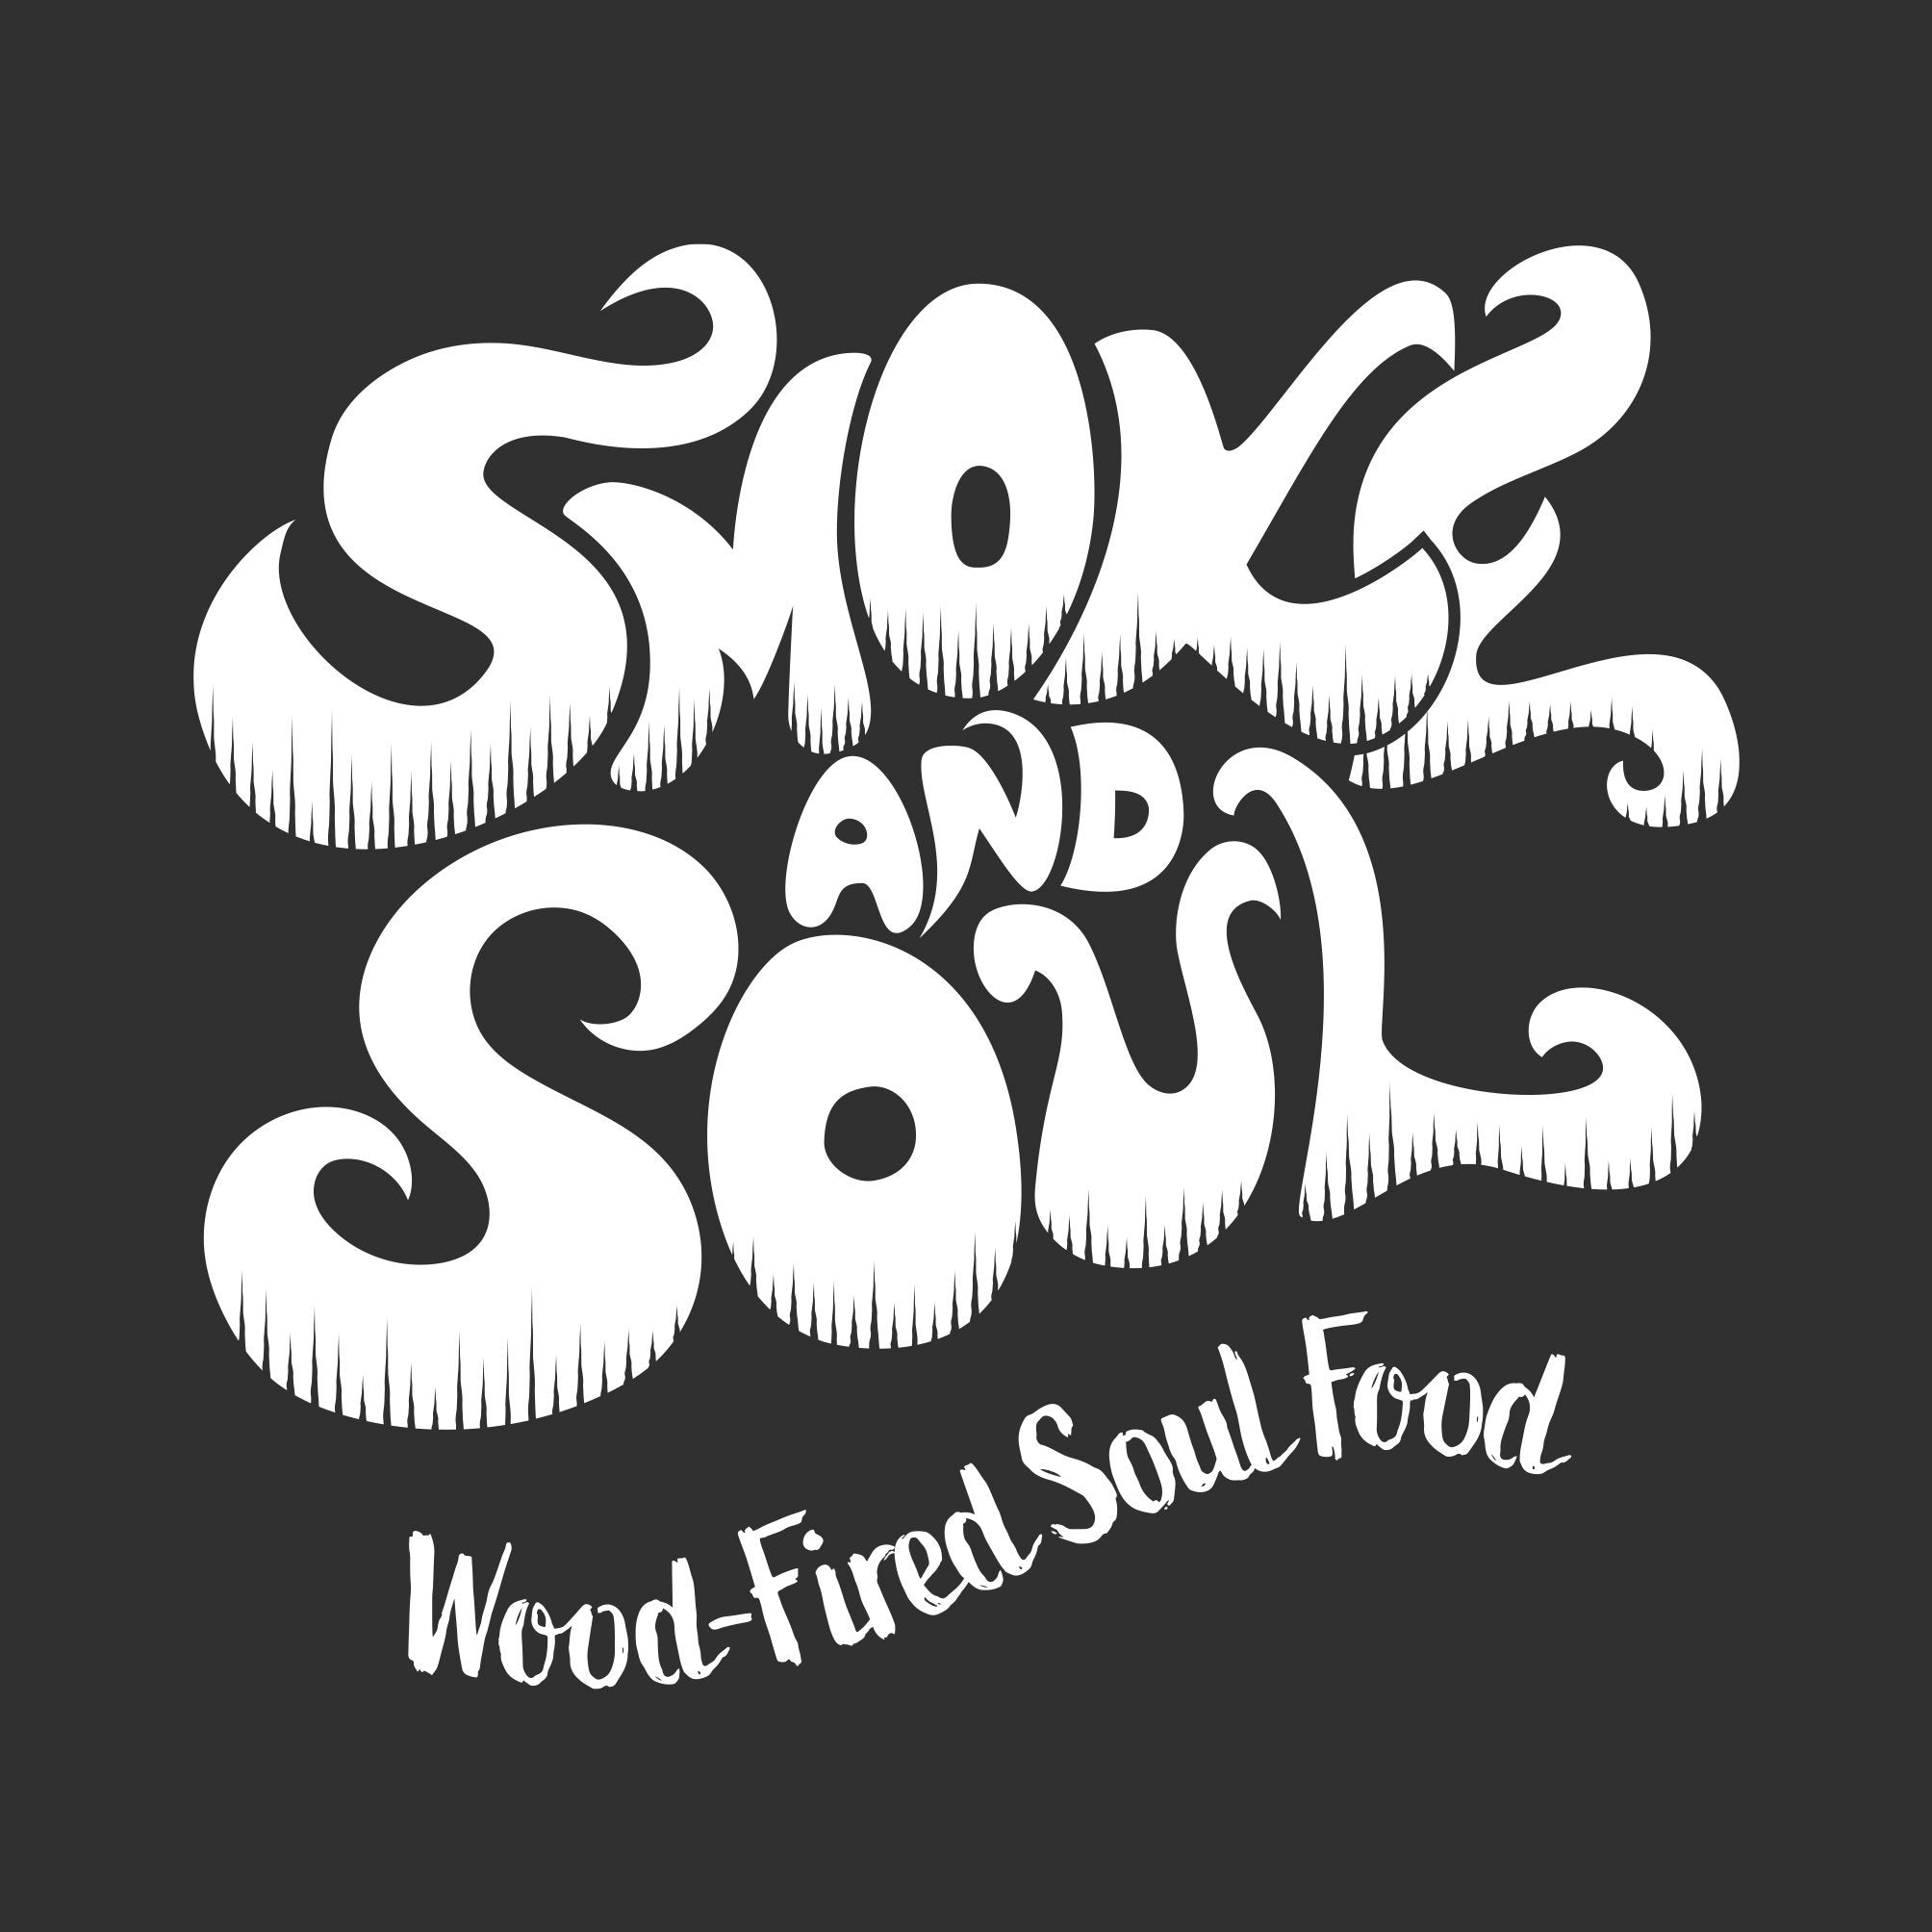 www.smokeandsoul.co.uk